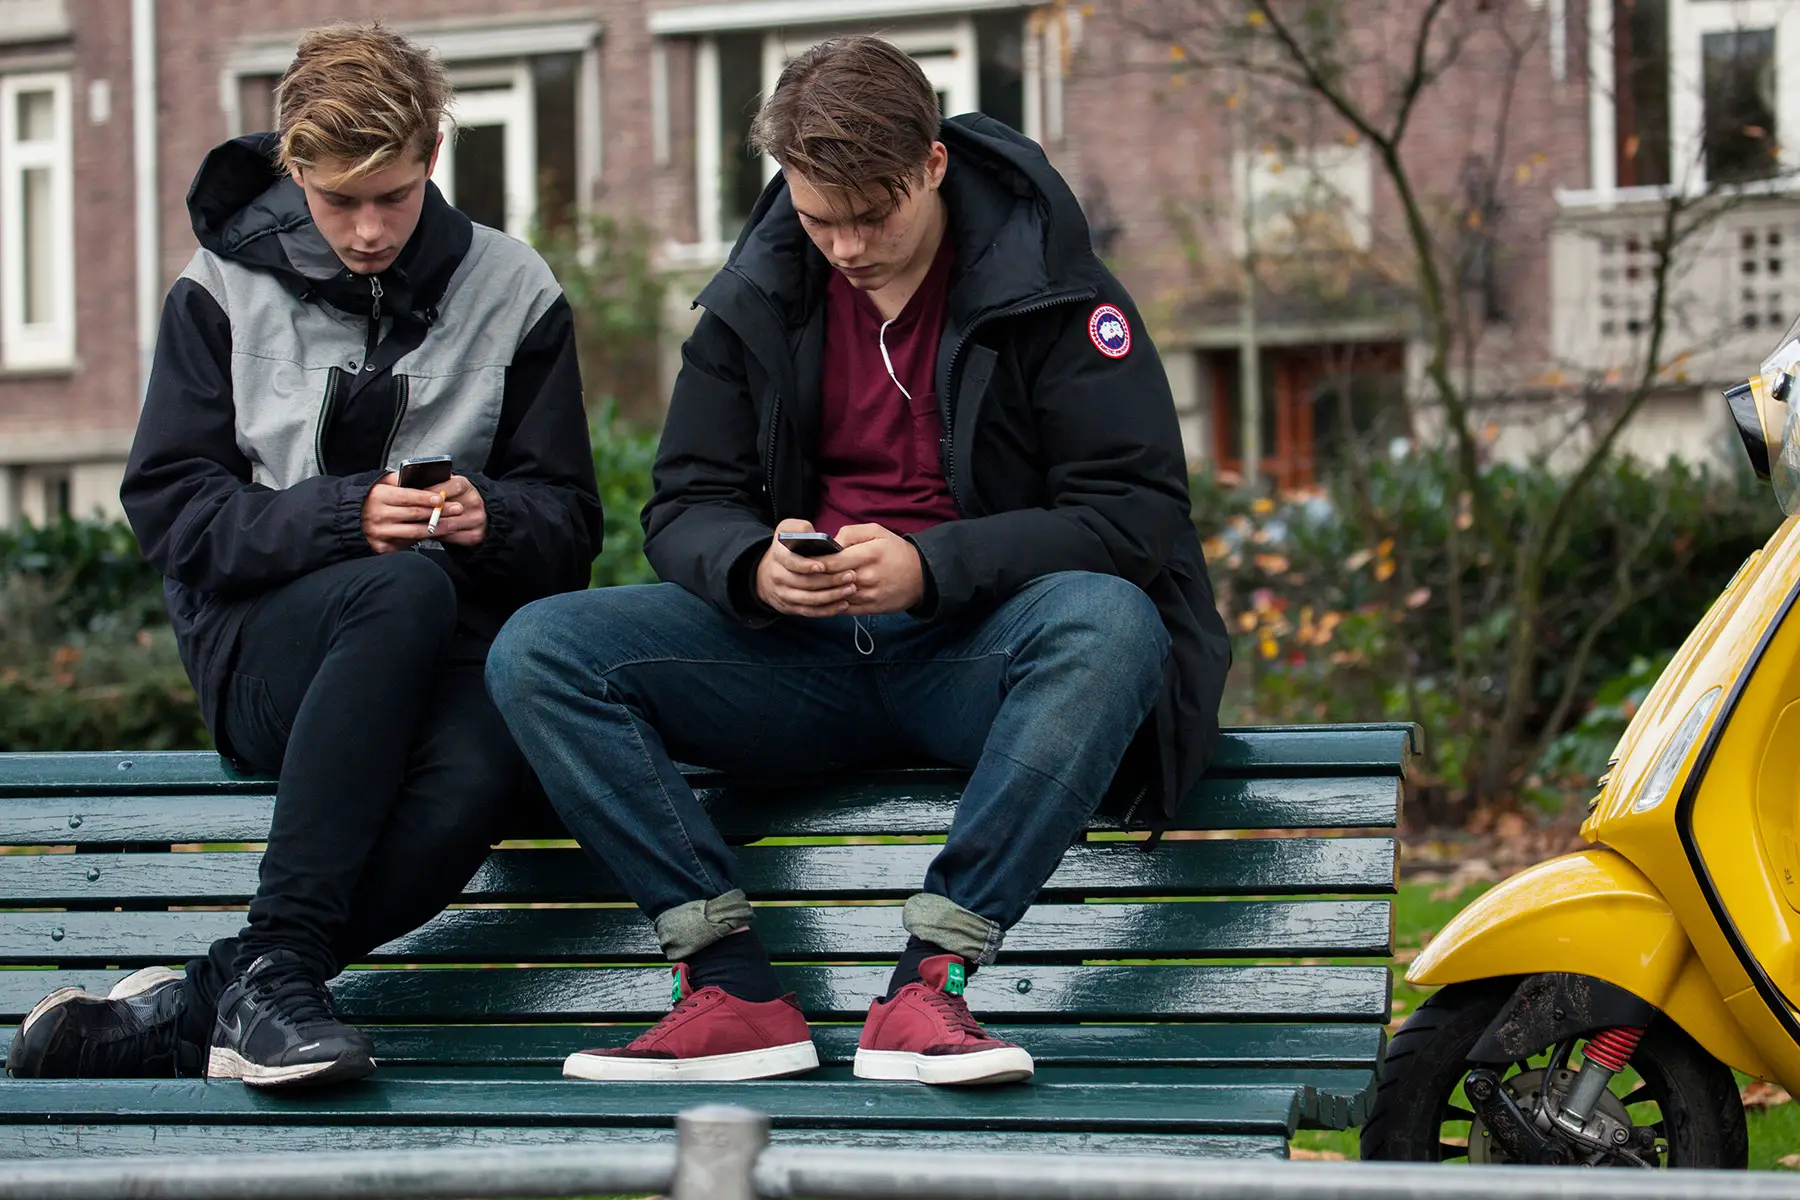 Teenagers in Amsterdam using their phones